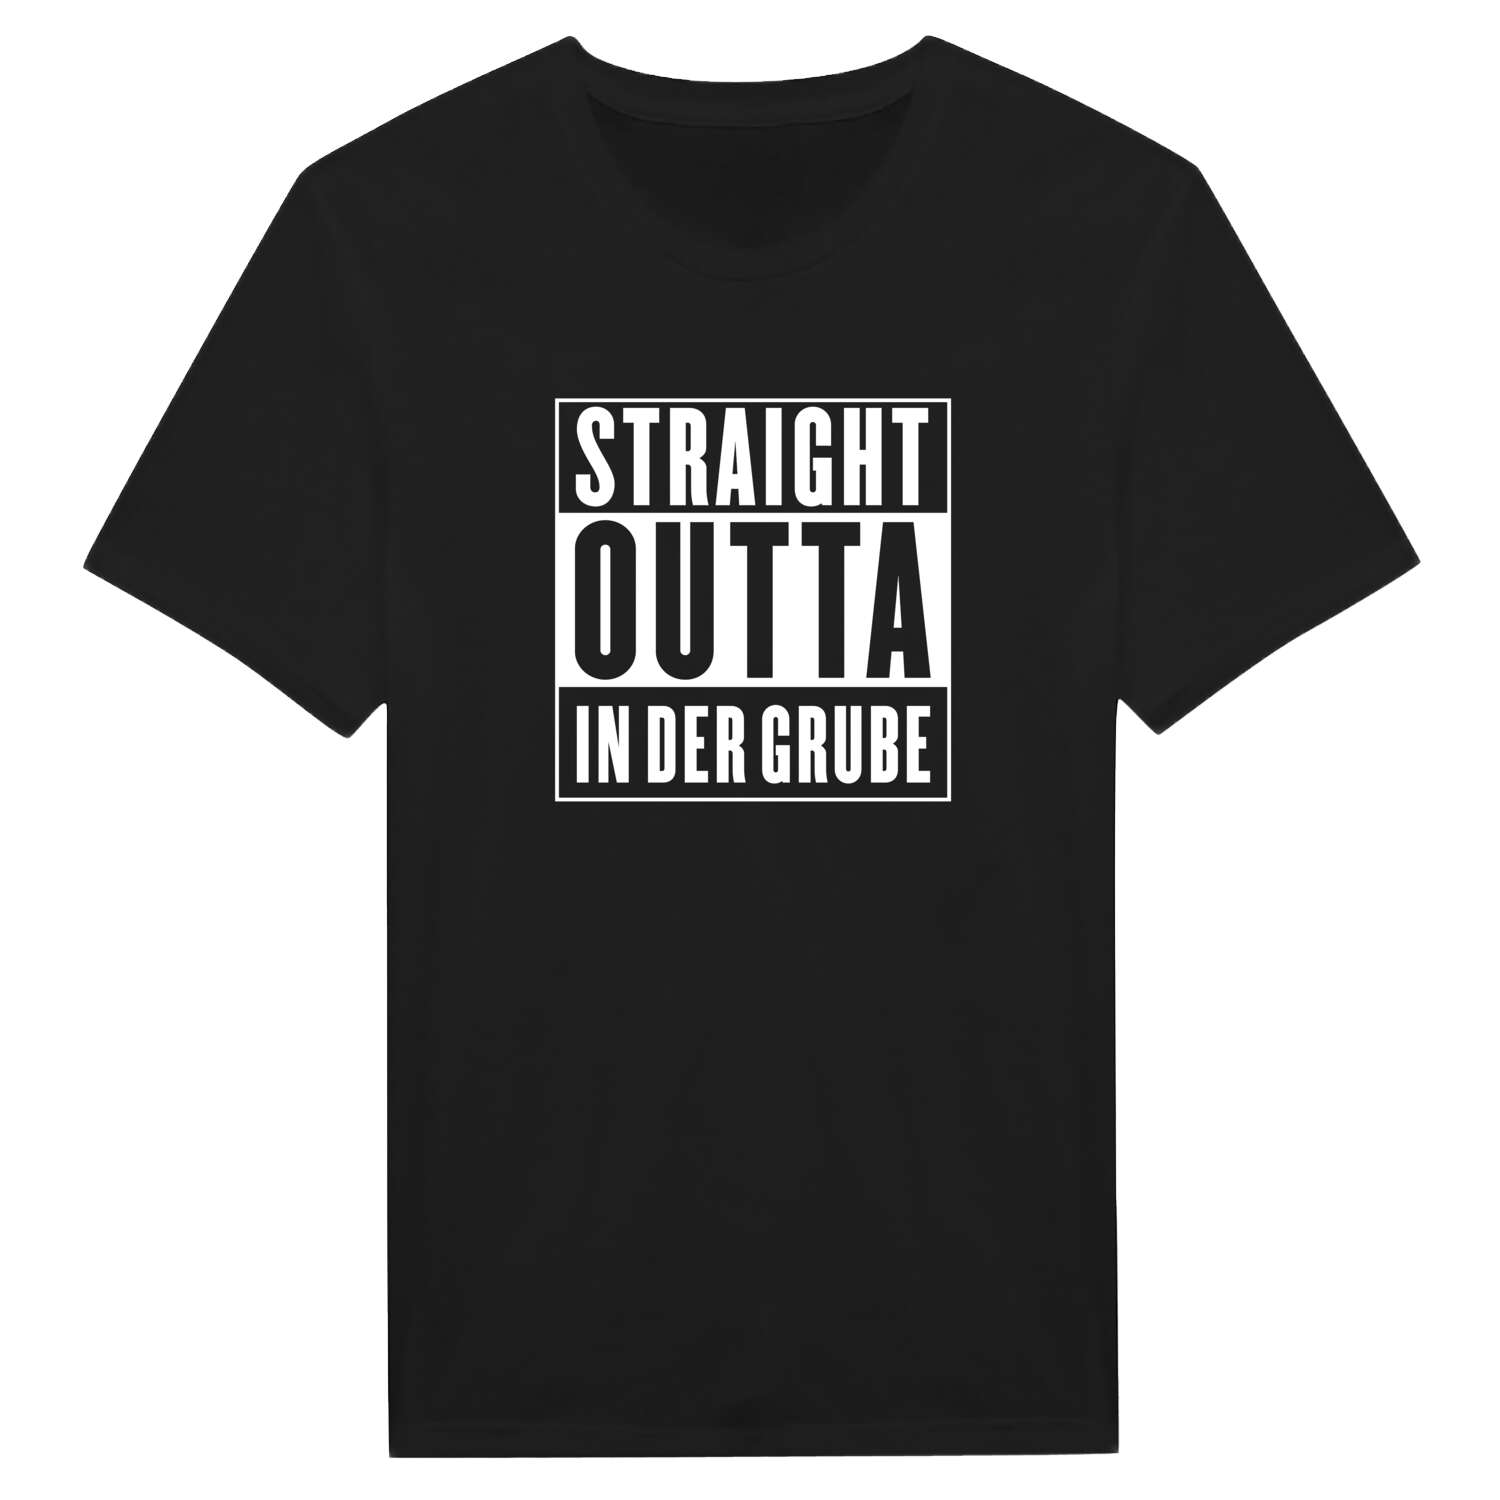 In der Grube T-Shirt »Straight Outta«